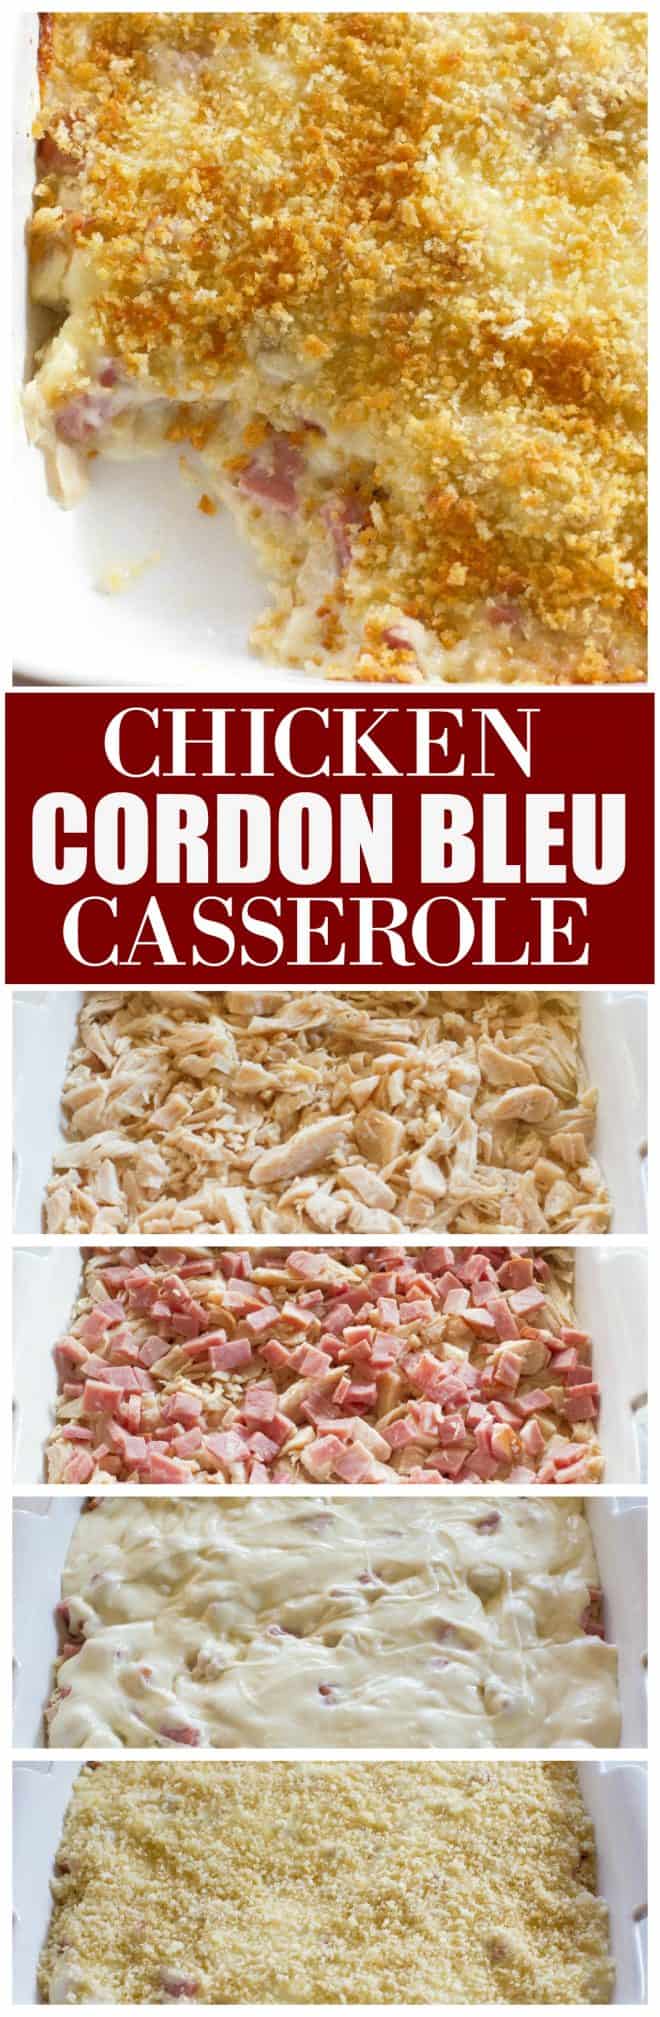 chicken cordon bleu casserole - Chicken Cordon Bleu Casserole